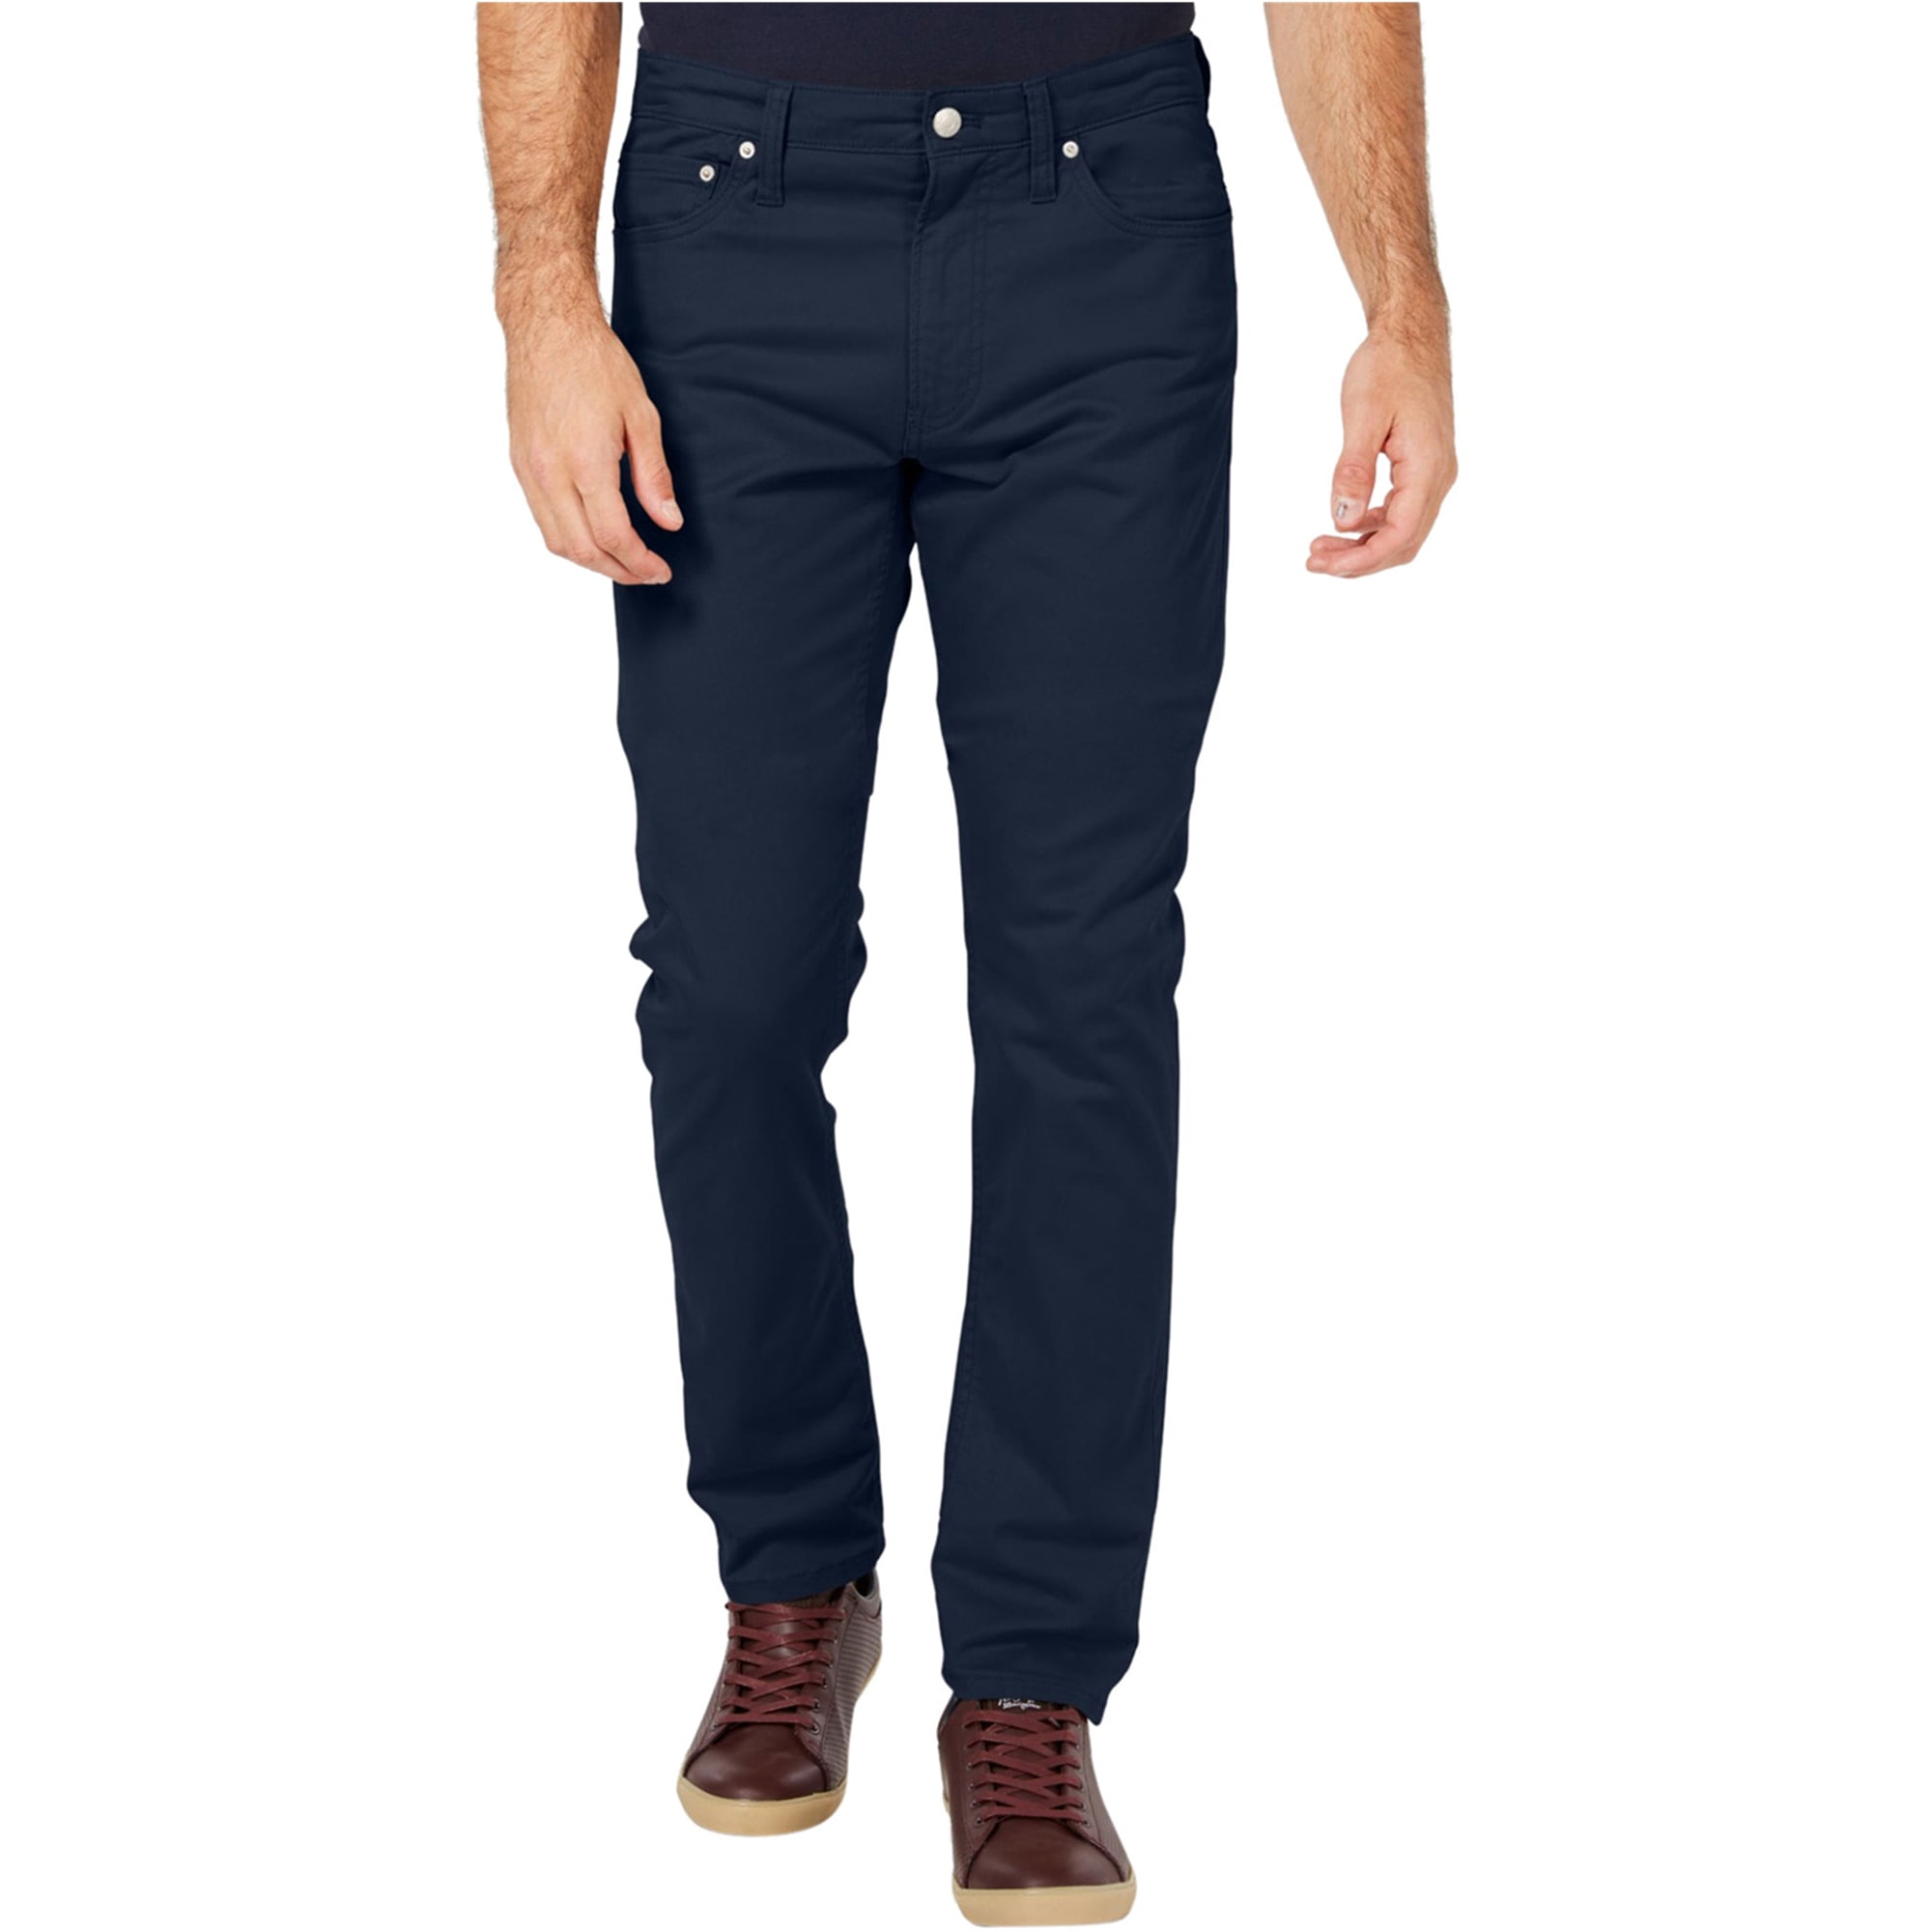 matras verkiezen Stoel Calvin Klein Mens Stretch Twill Slim Fit Jeans, Blue, 40W x 32L -  Walmart.com